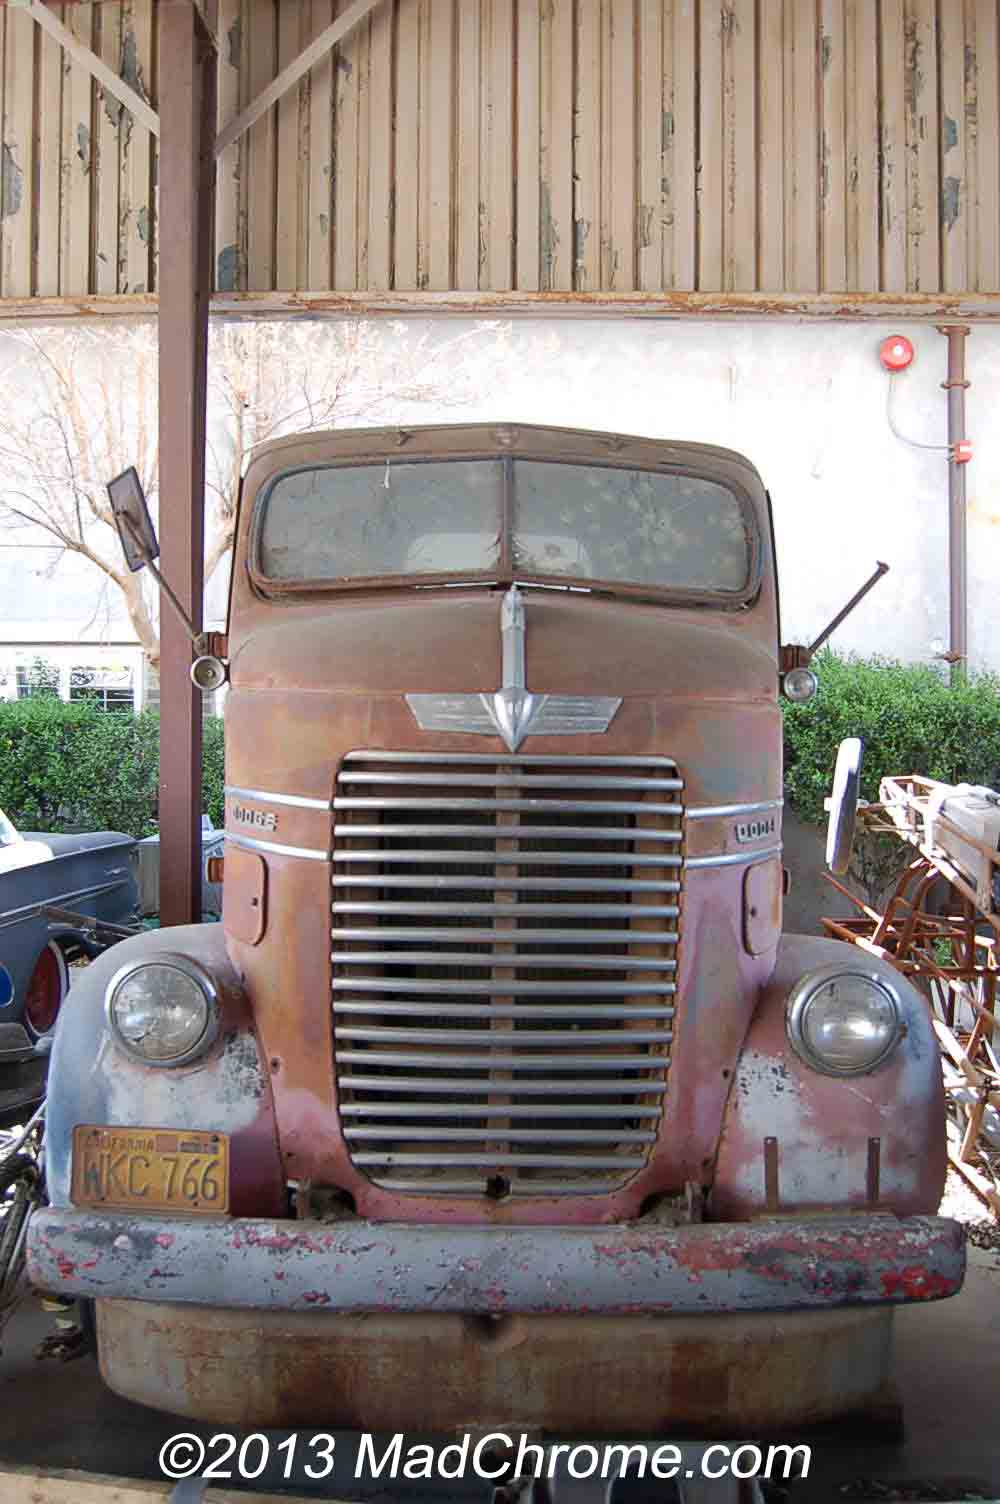 Truck Salvage: Vintage Truck Salvage Yards